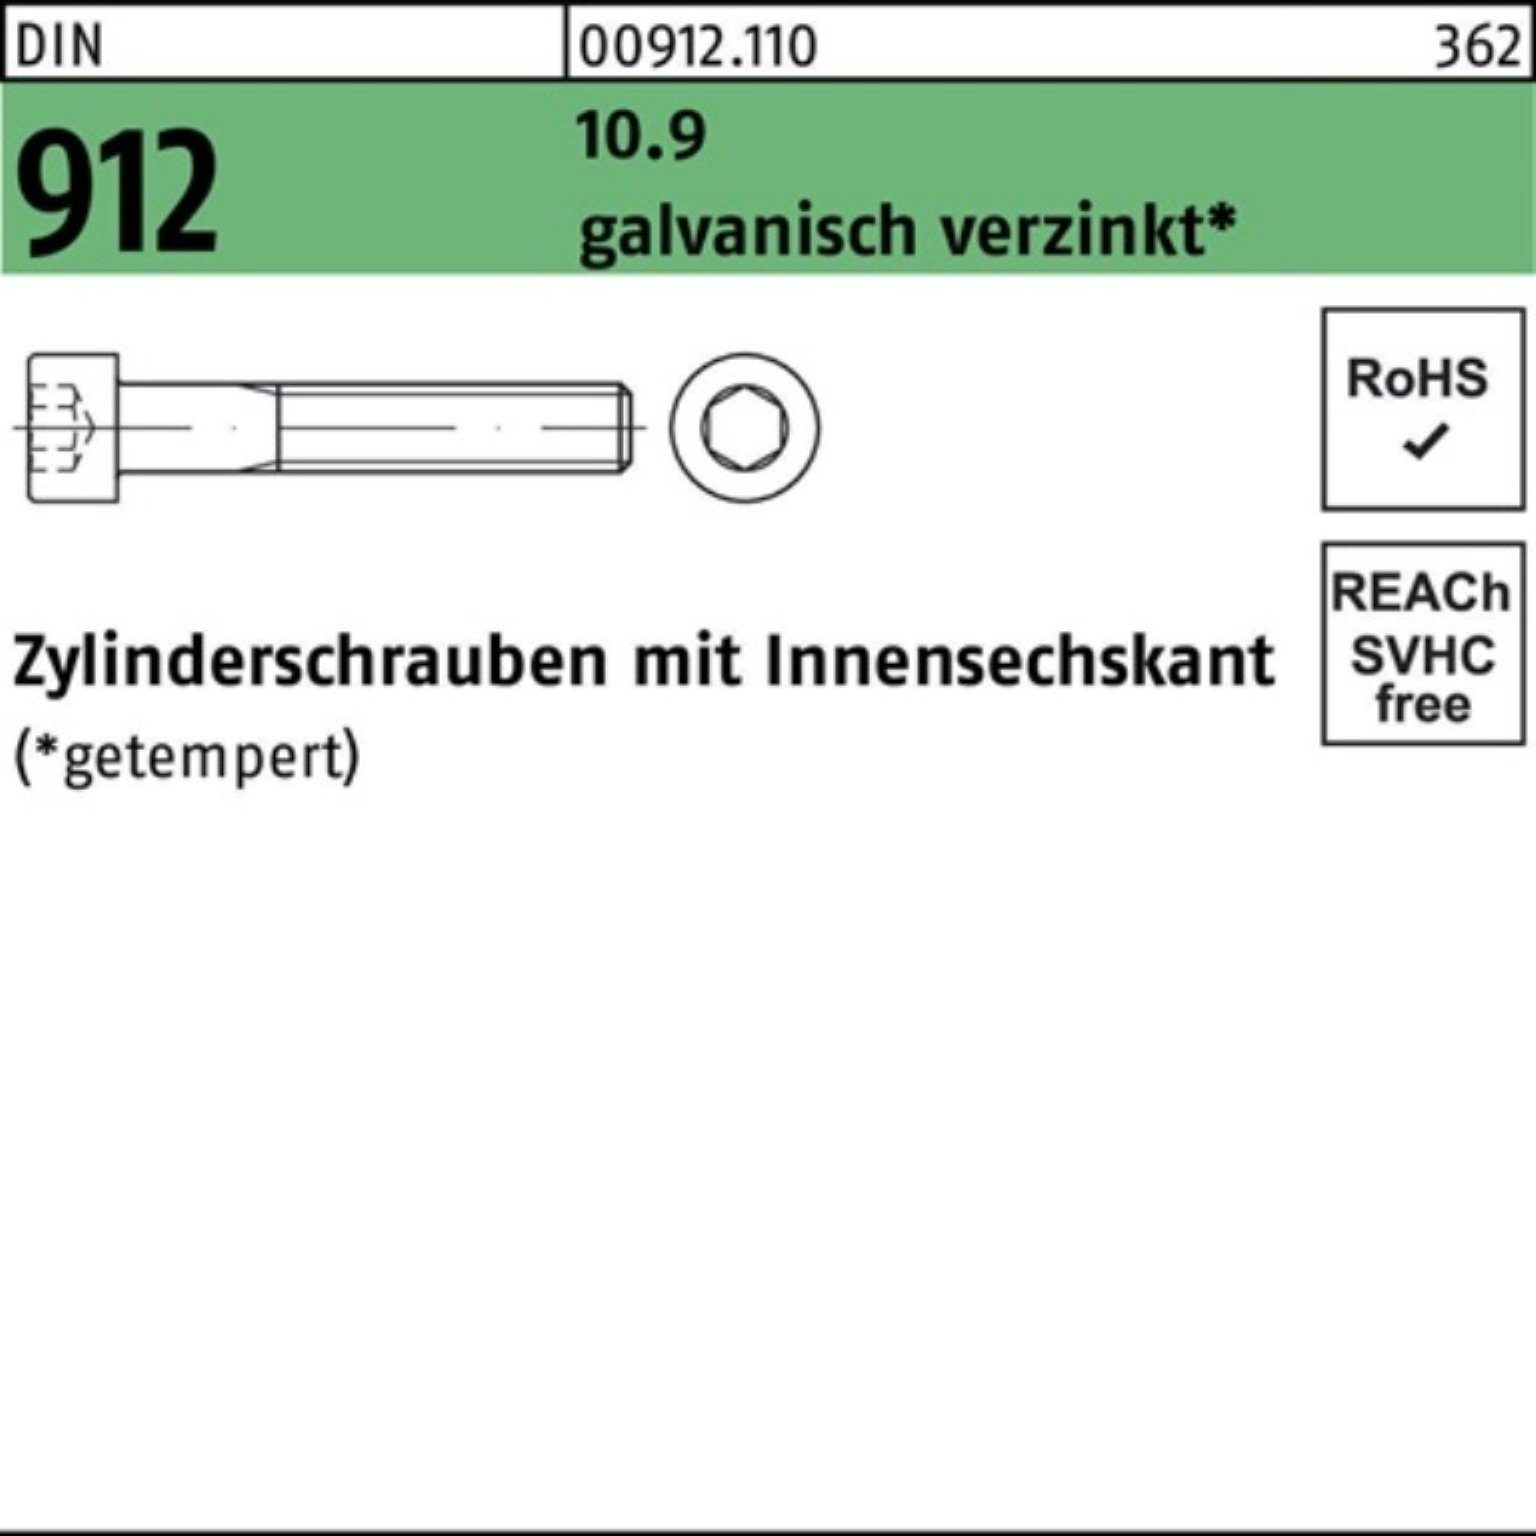 M4x50 50 Reyher Zylinderschraube 10.9 500er Pack Zylinderschraube DIN galv.verz. Innen-6kt 912